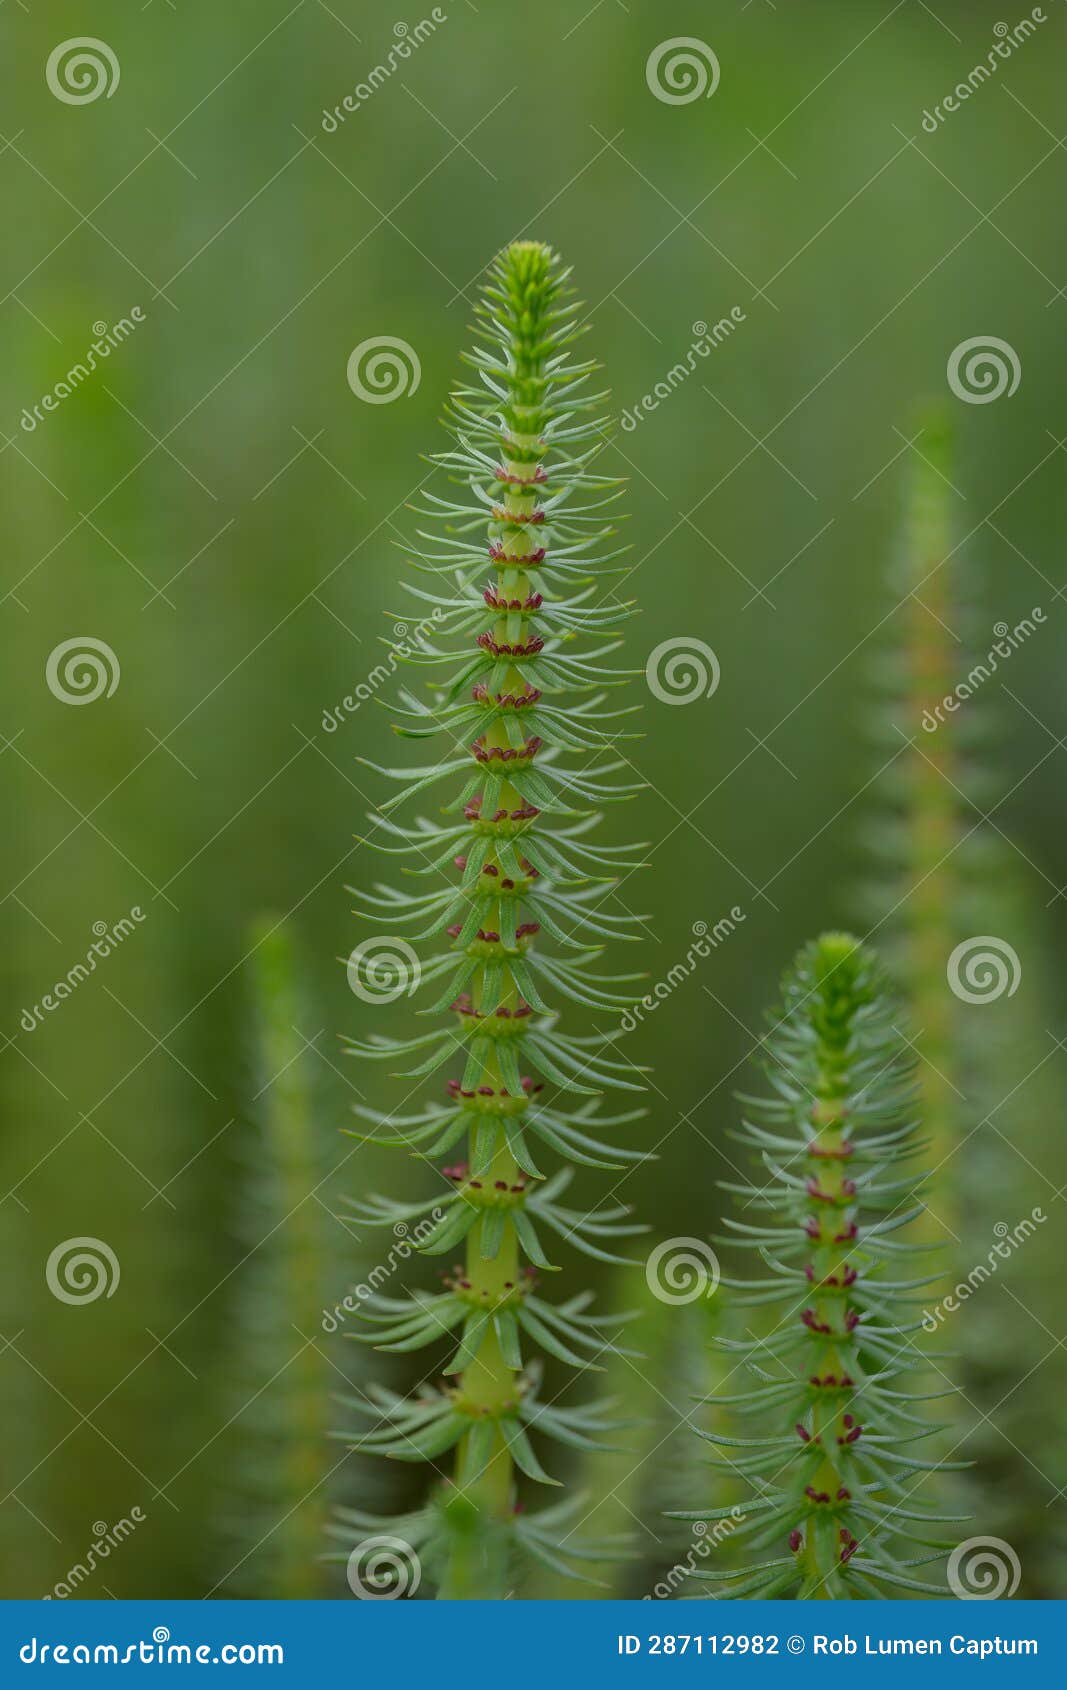 mareâs-tail hippuris vulgaris, flowering plant